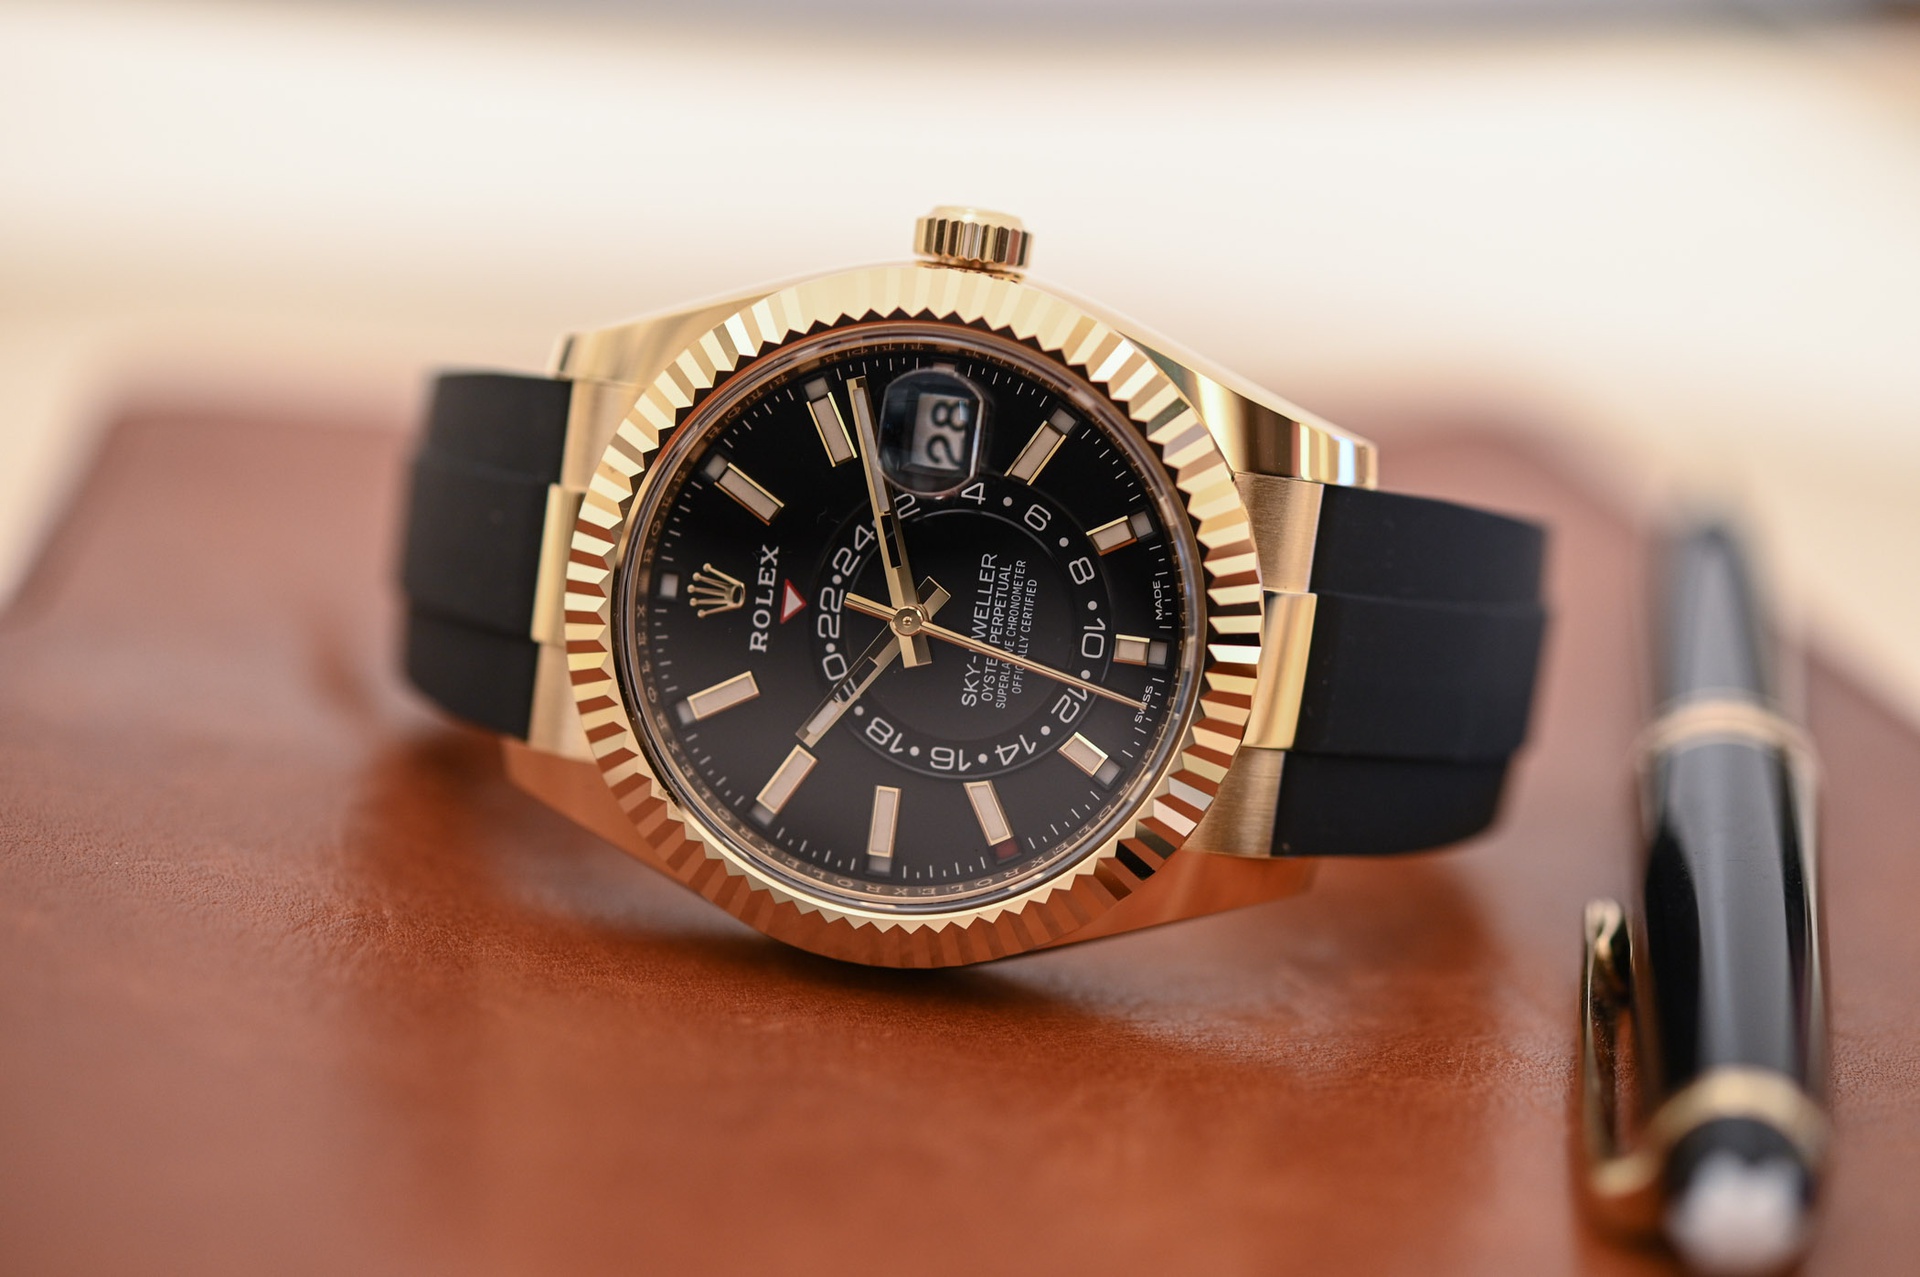 Rolex Sky-Dweller Oysterflex Braclet là chiếc đồng hồ tiếp theo góp mặt trong danh sách. Mặt đồng hồ bằng vàng, có vòng khung hình răng cưa, phản chiếu ánh sáng đầy sang trọng. Chiếc đồng hồ sử dụng dây đeo cao su thay vì dây sắt như thông thường để thể hiện tính hiện đại trong một thiết kế cổ điển.